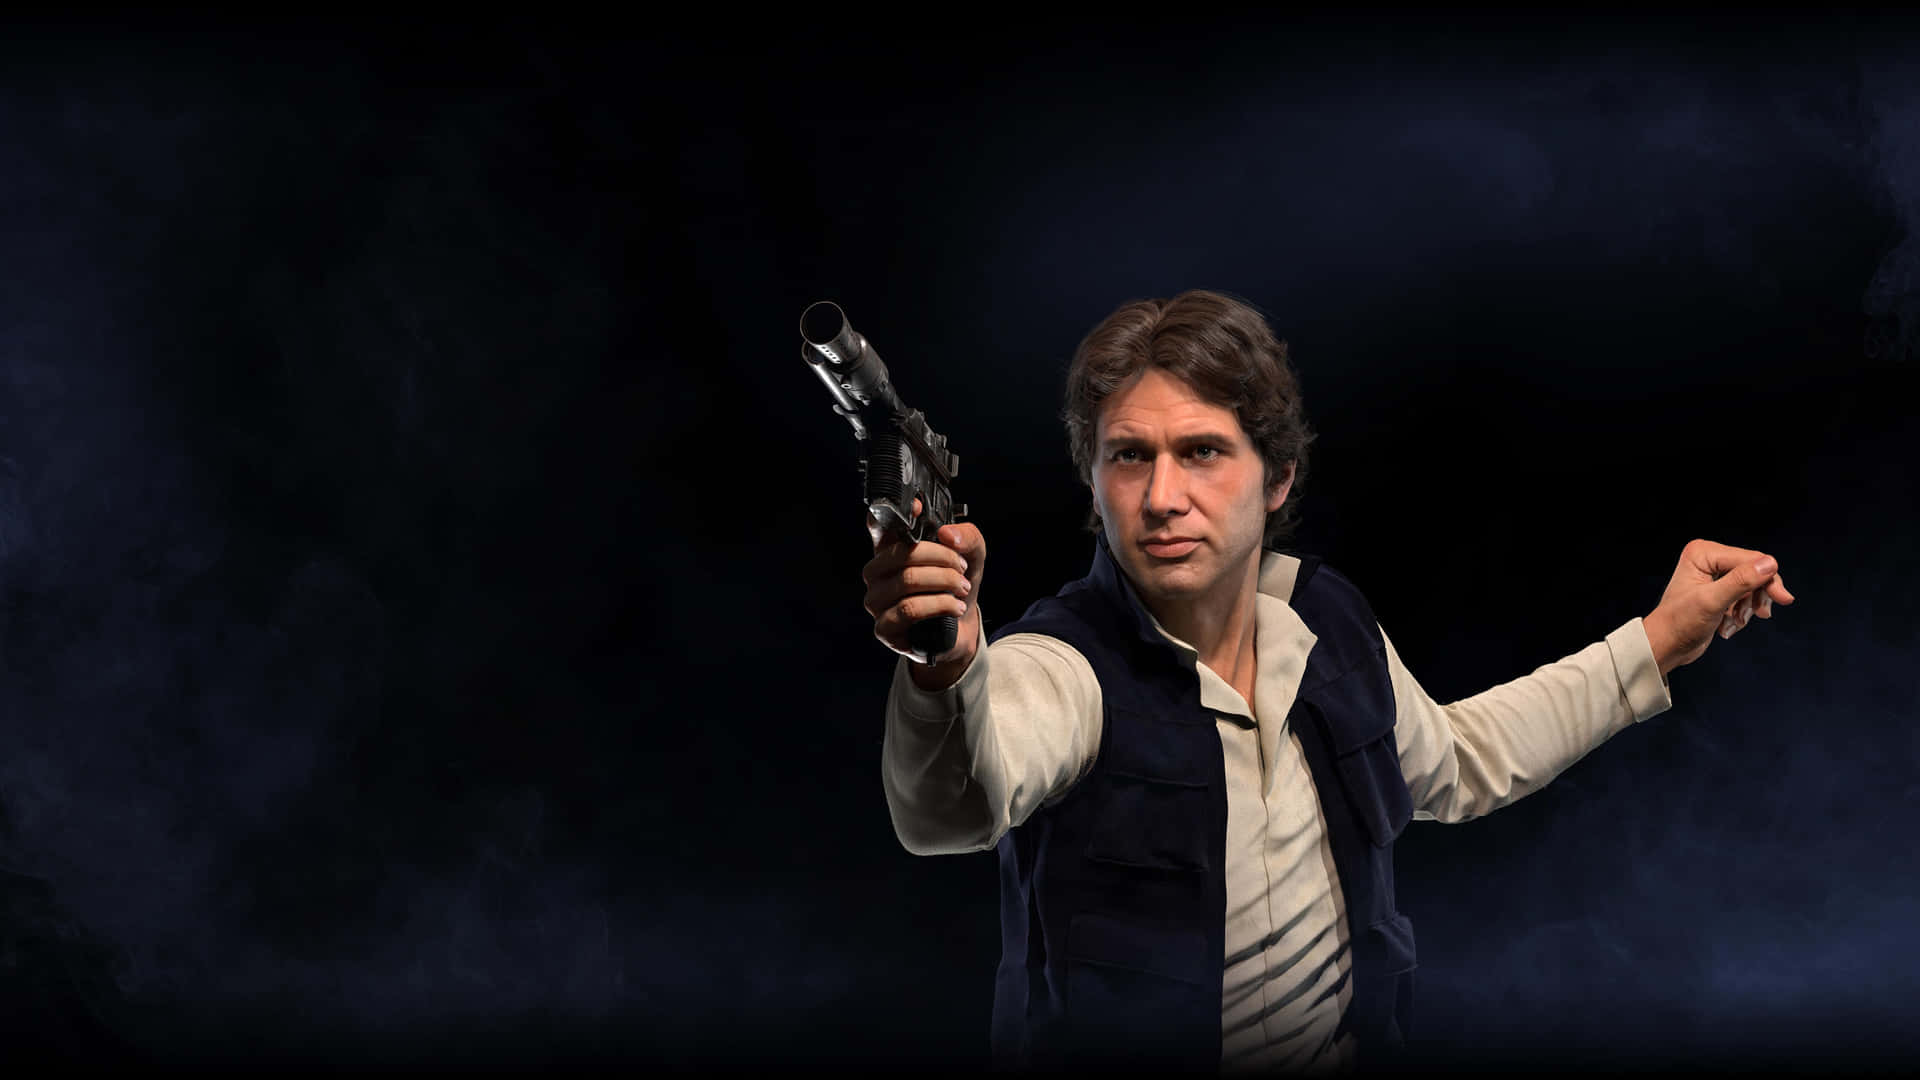 Han Solo In Star Wars Wallpaper